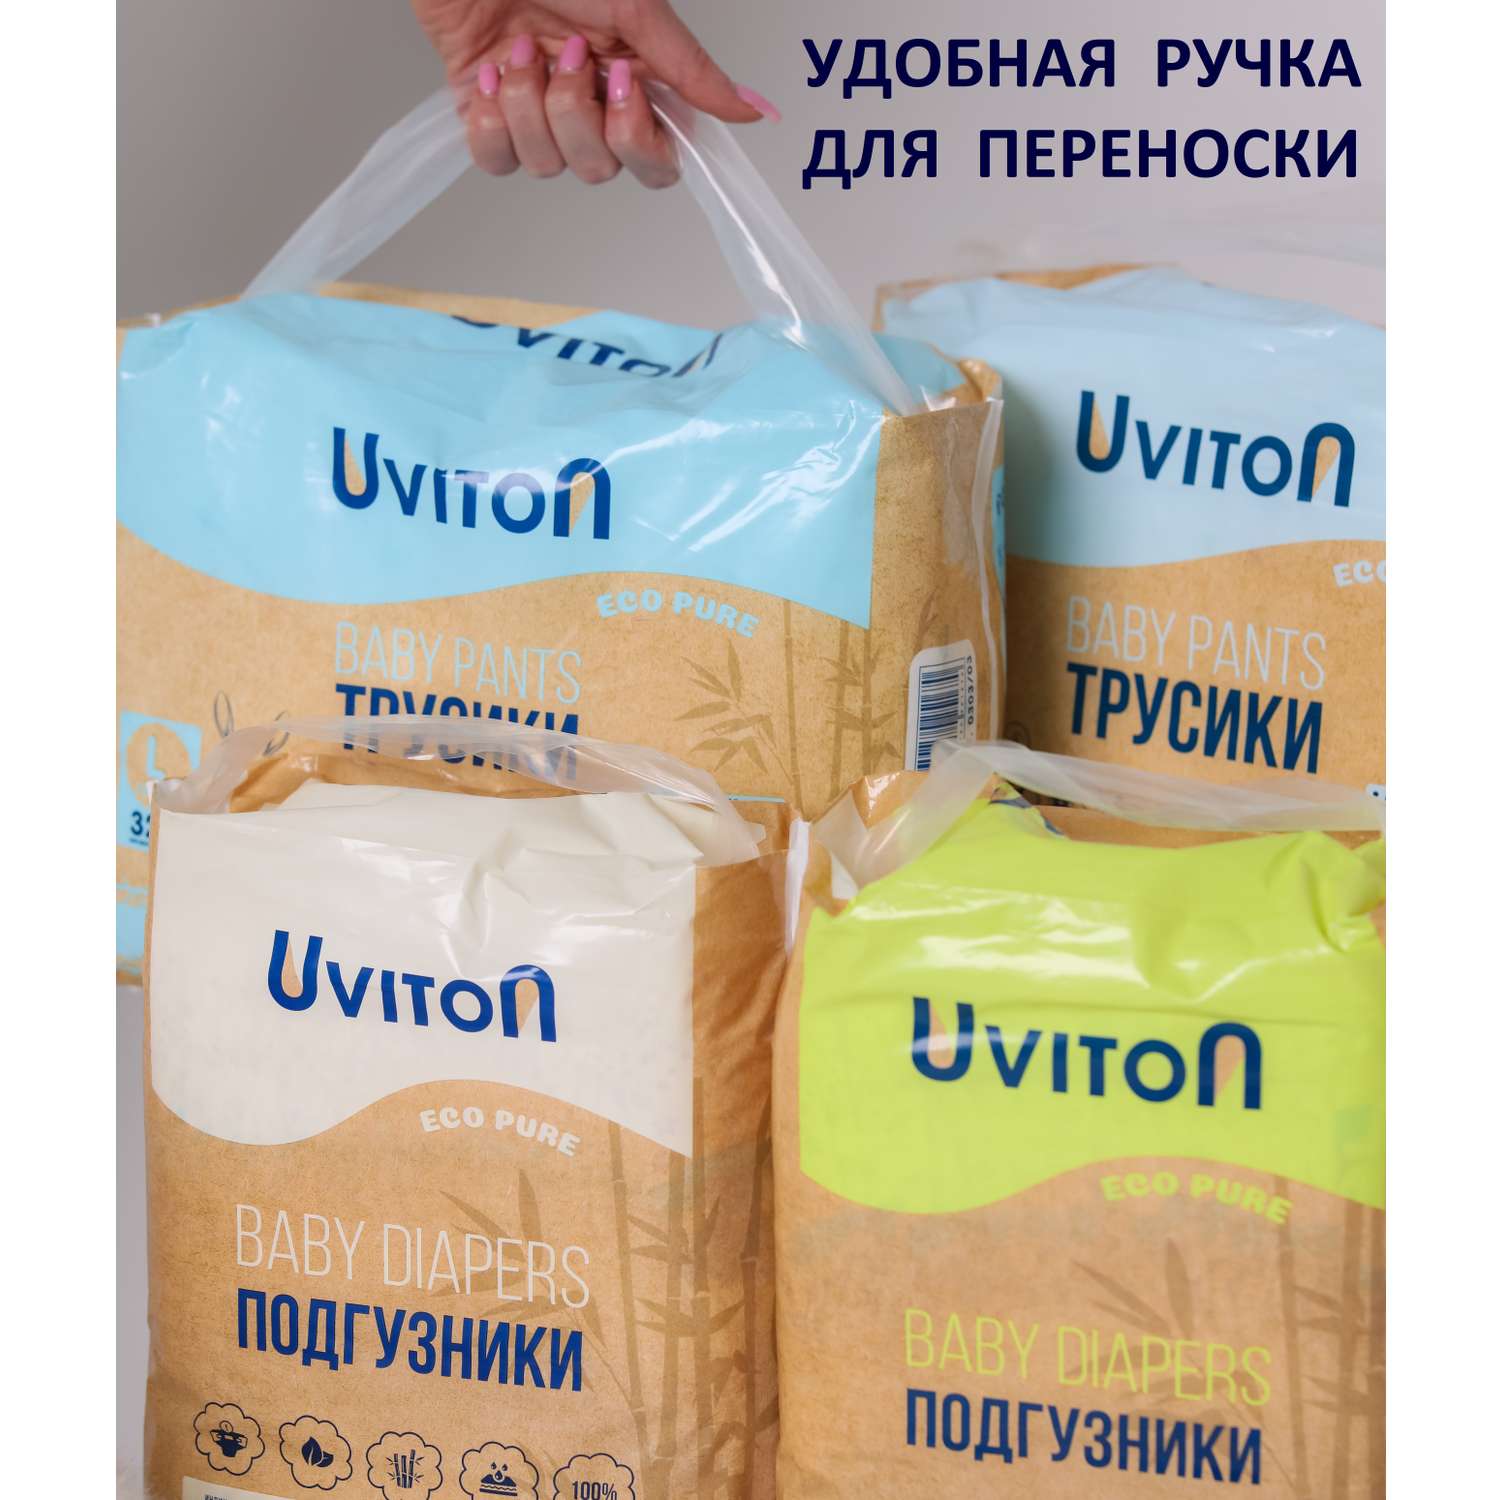 Подгузники Uviton детские размер S (2-6кг.) 42шт. в уп. - фото 19